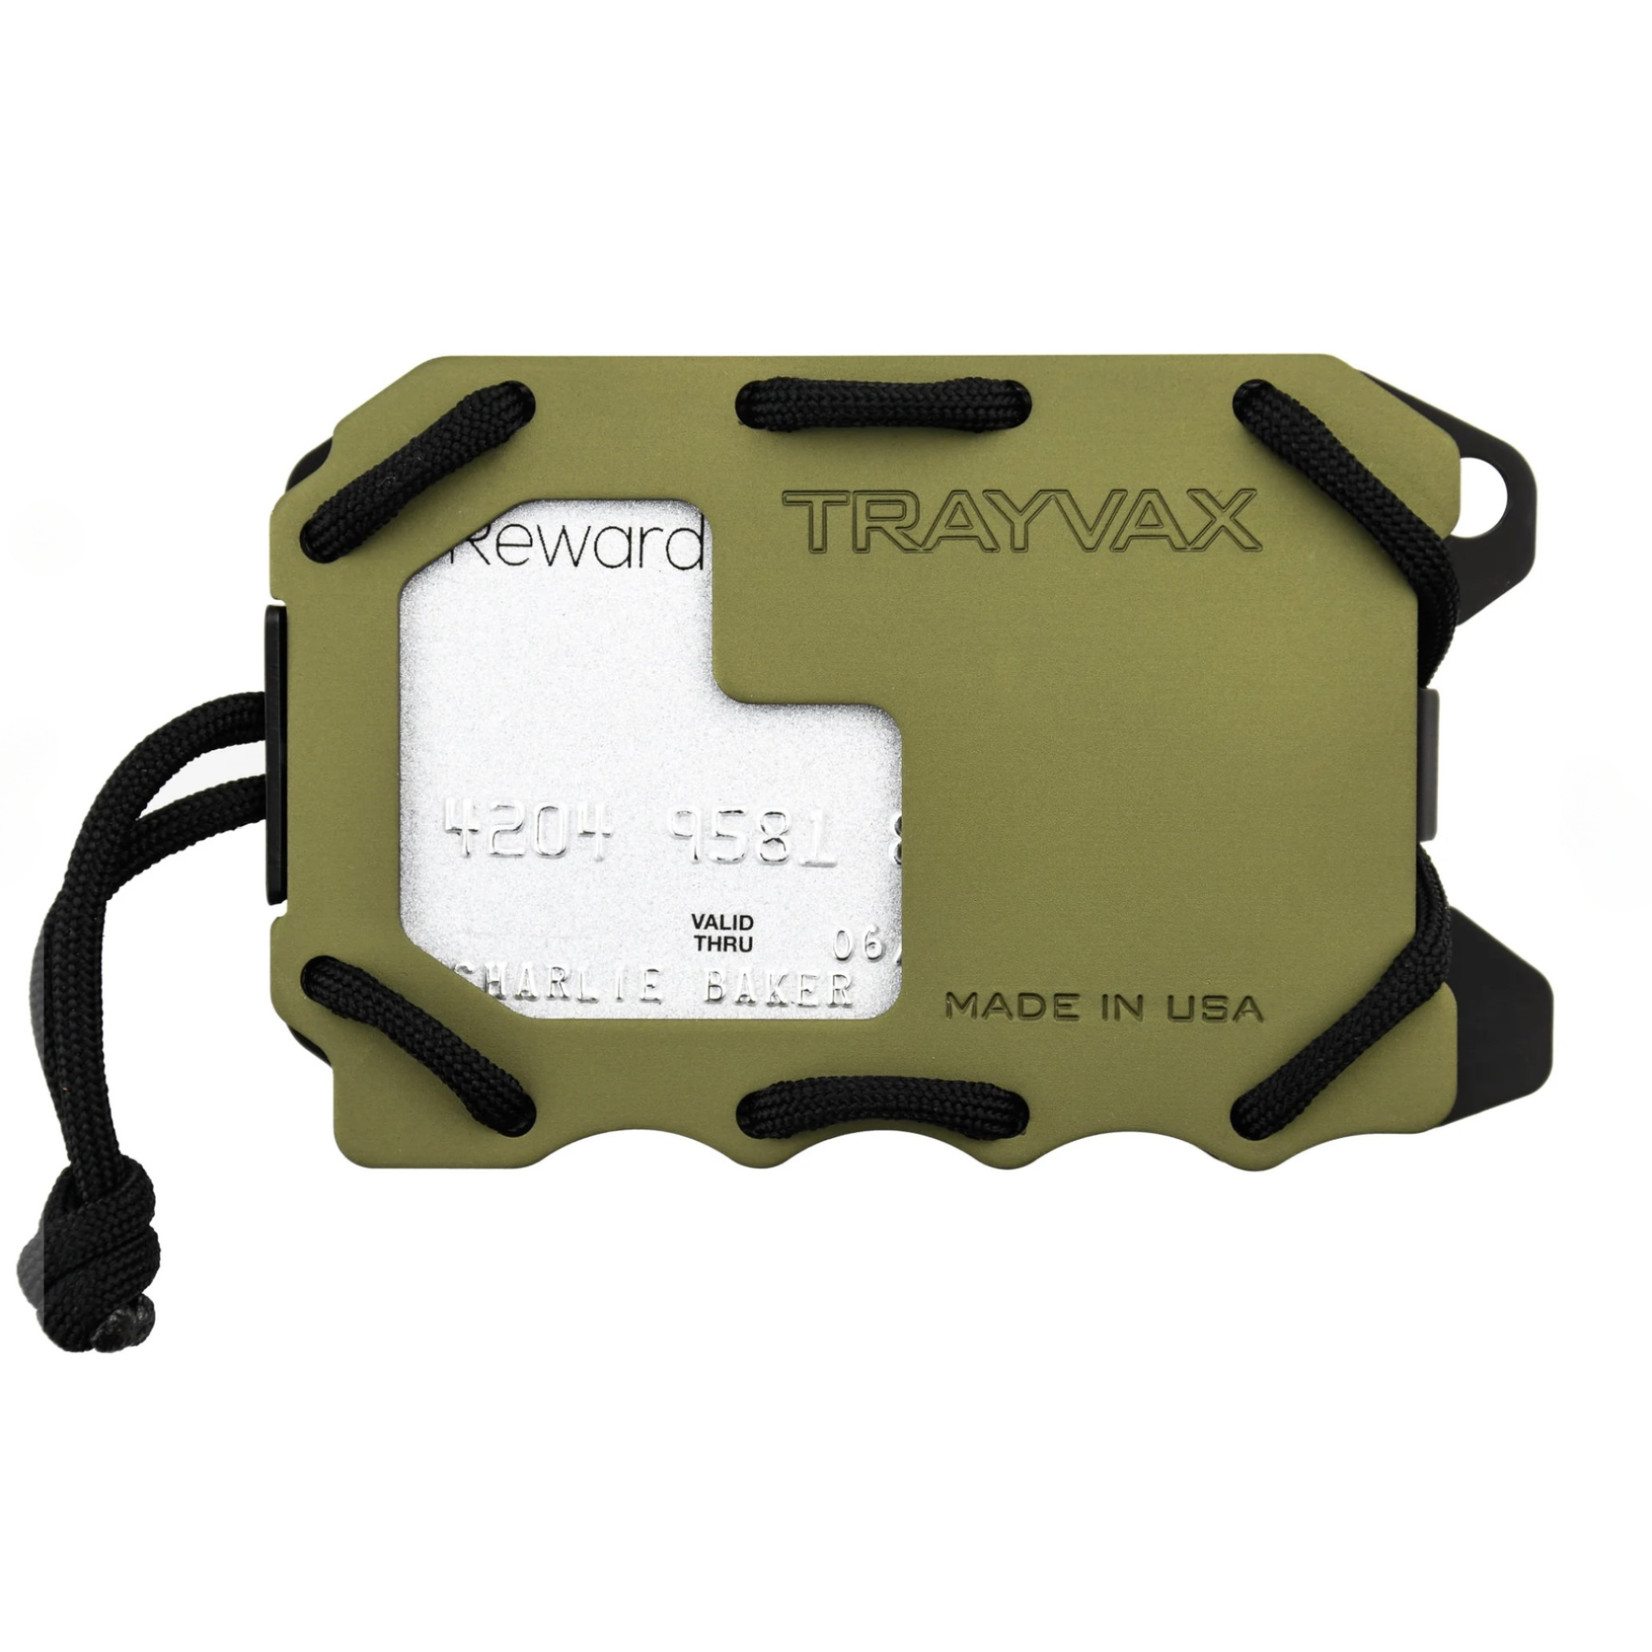 Trayvax Trayvax Original 2.0 Wallet